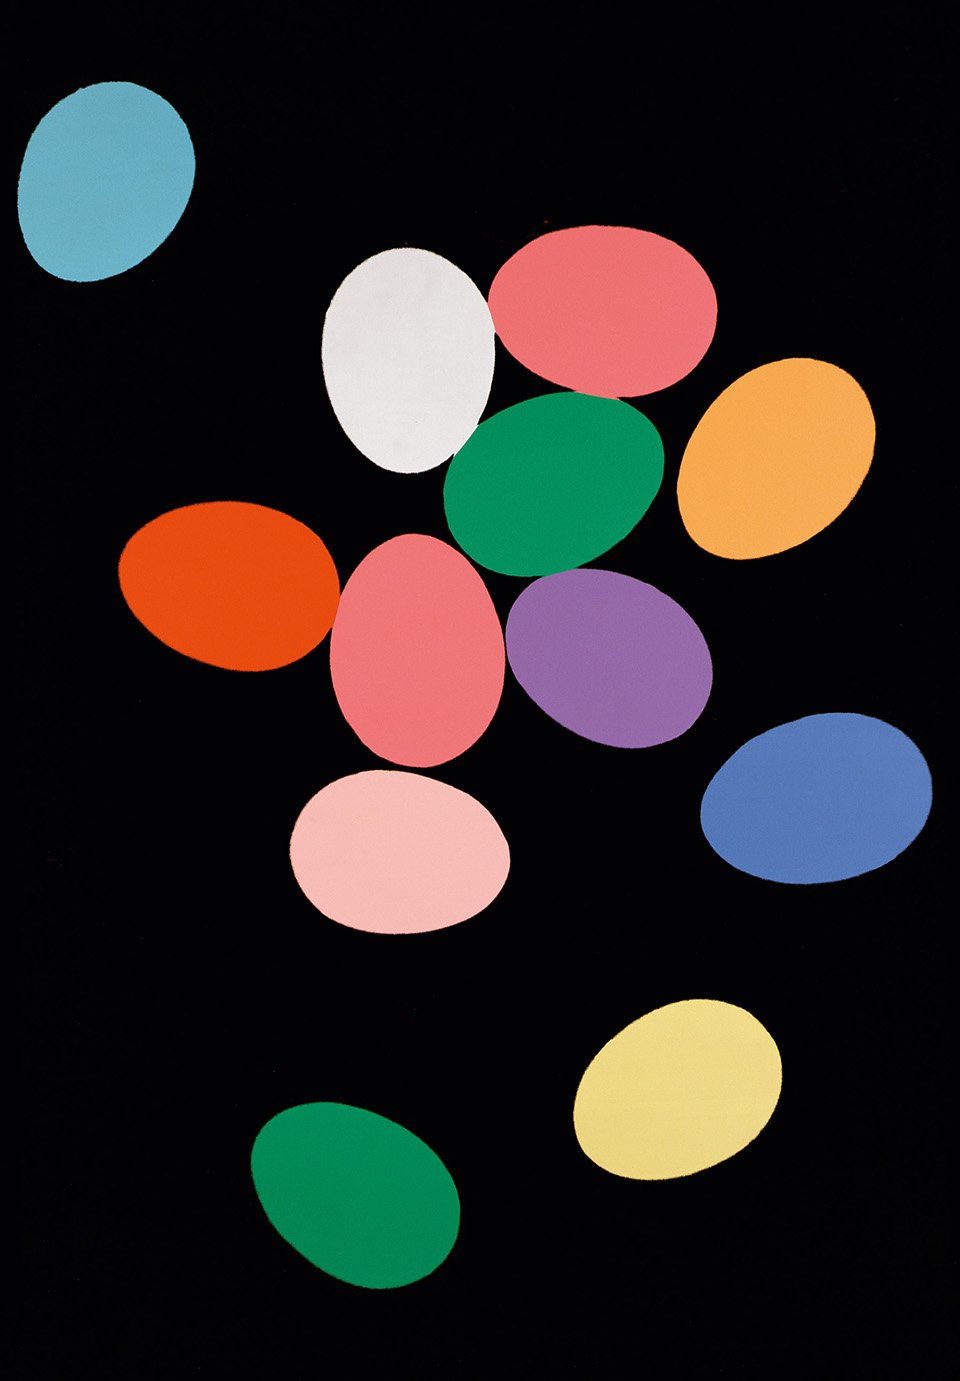 Η σειρά «Αυγά» (1982) του Αντι Γουόρχολ διαφέρει από τη συνηθισμένη δουλειά του καλλιτέχνη που αντλούσε έμπνευση από διαφημιστικά γραφικά και την κουλτούρα των διασημοτήτων. Αυτή η σειρά απεικονίζει πολύχρωμα αυγά, τα οποία θυμίζουν τεράστια ζελεδάκια που επιπλέουν σε μαύρο φόντο. Ο Γουόρχολ τα χάρισε στην οικογένεια και στους φίλους του ως πασχαλινά δώρα 